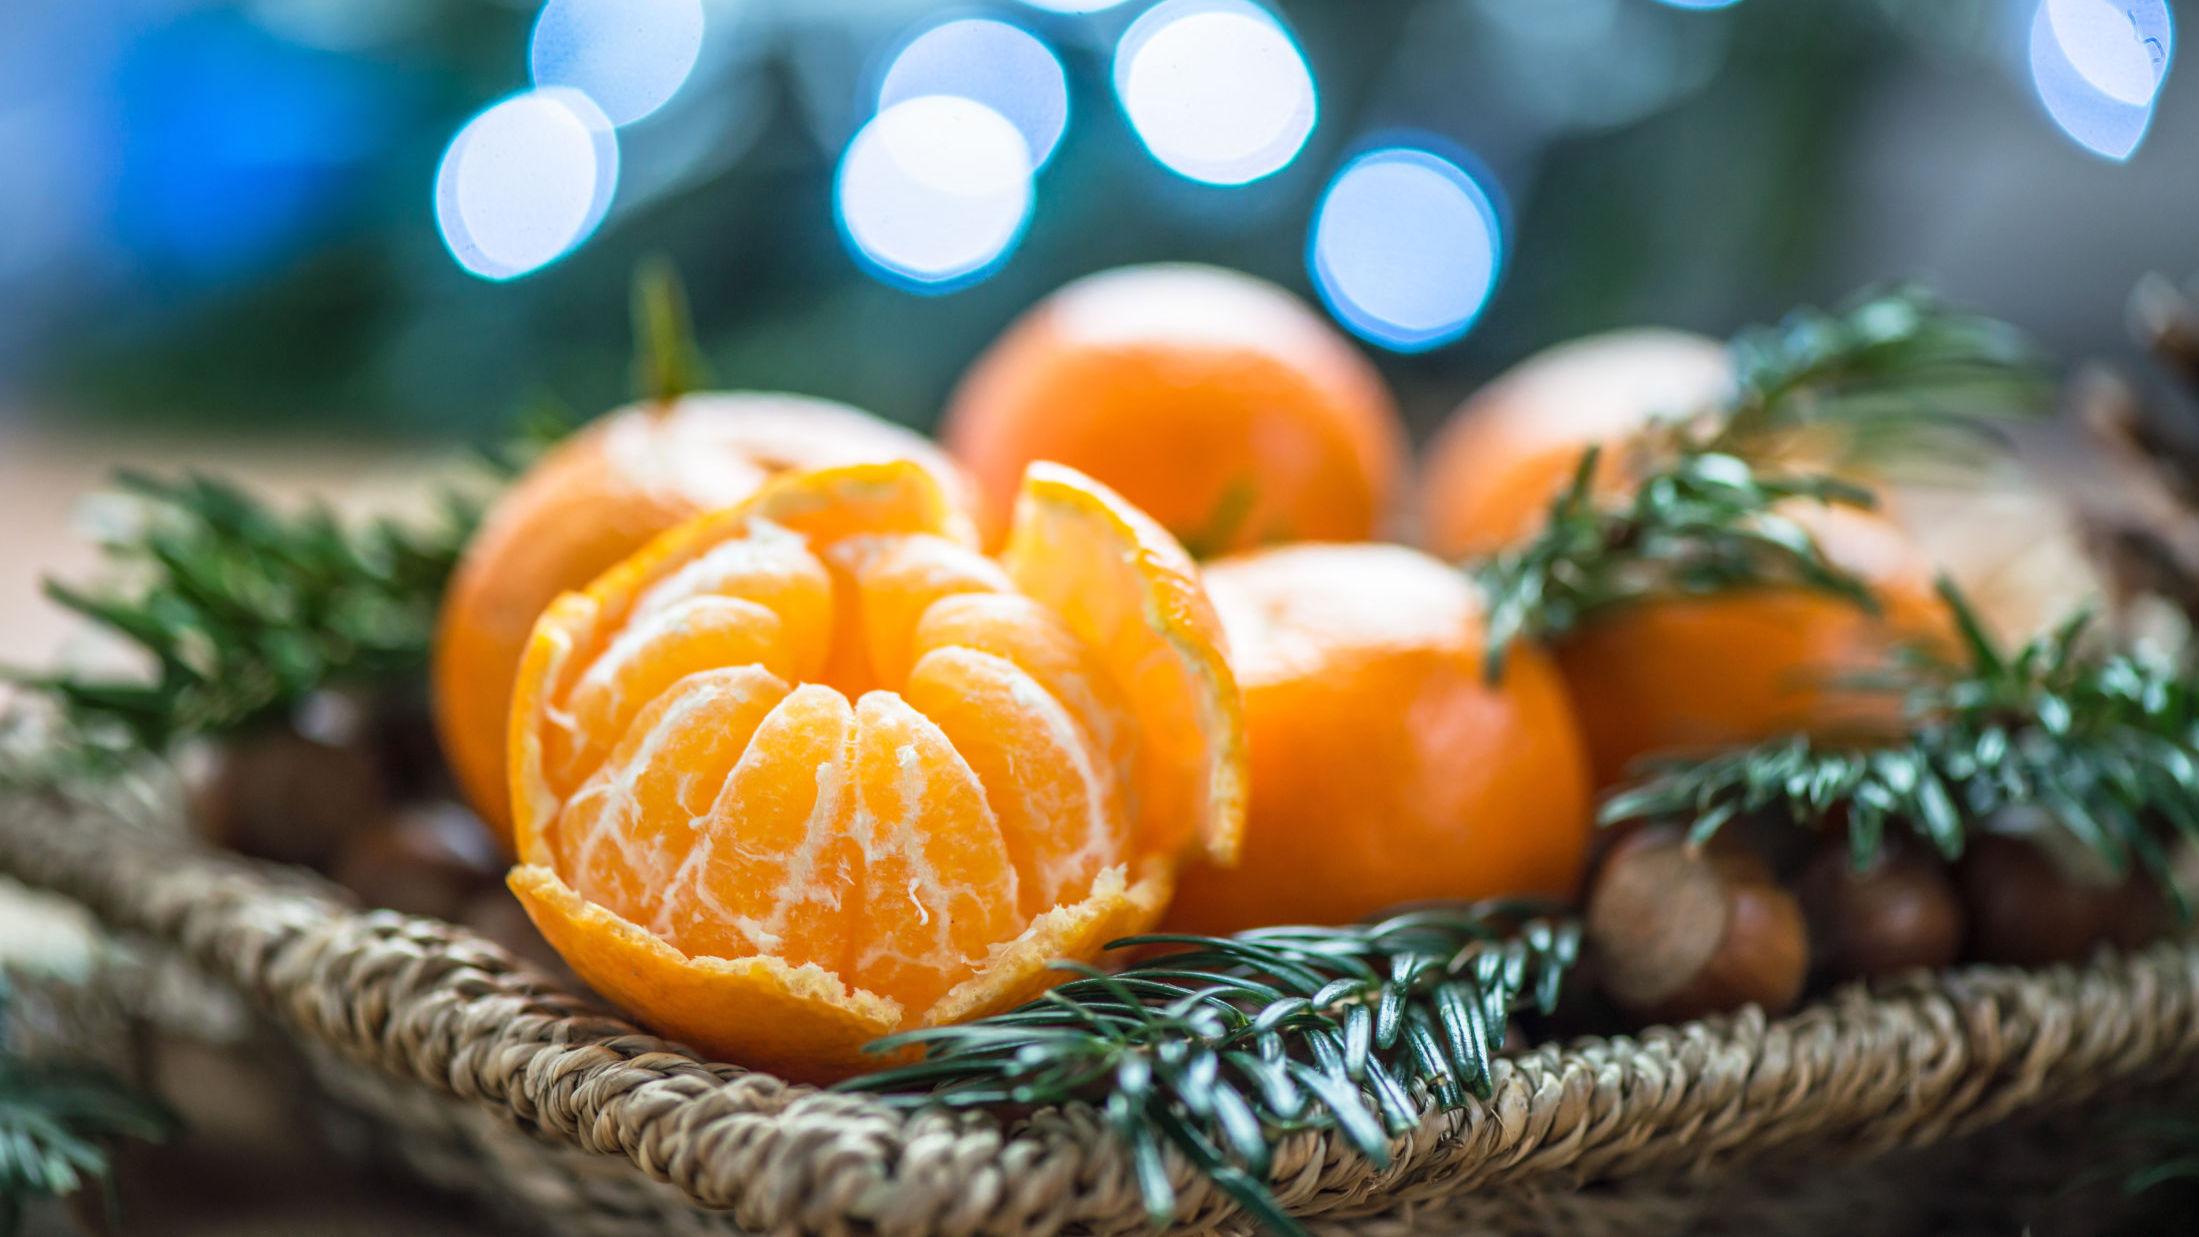 O, STORE FRUKT: Klementiner er å oppdrive året rundt, men det er i disse juletider nordmenn spiser mest av frukten. Foto: Anna Mente/NTB Scanpix.